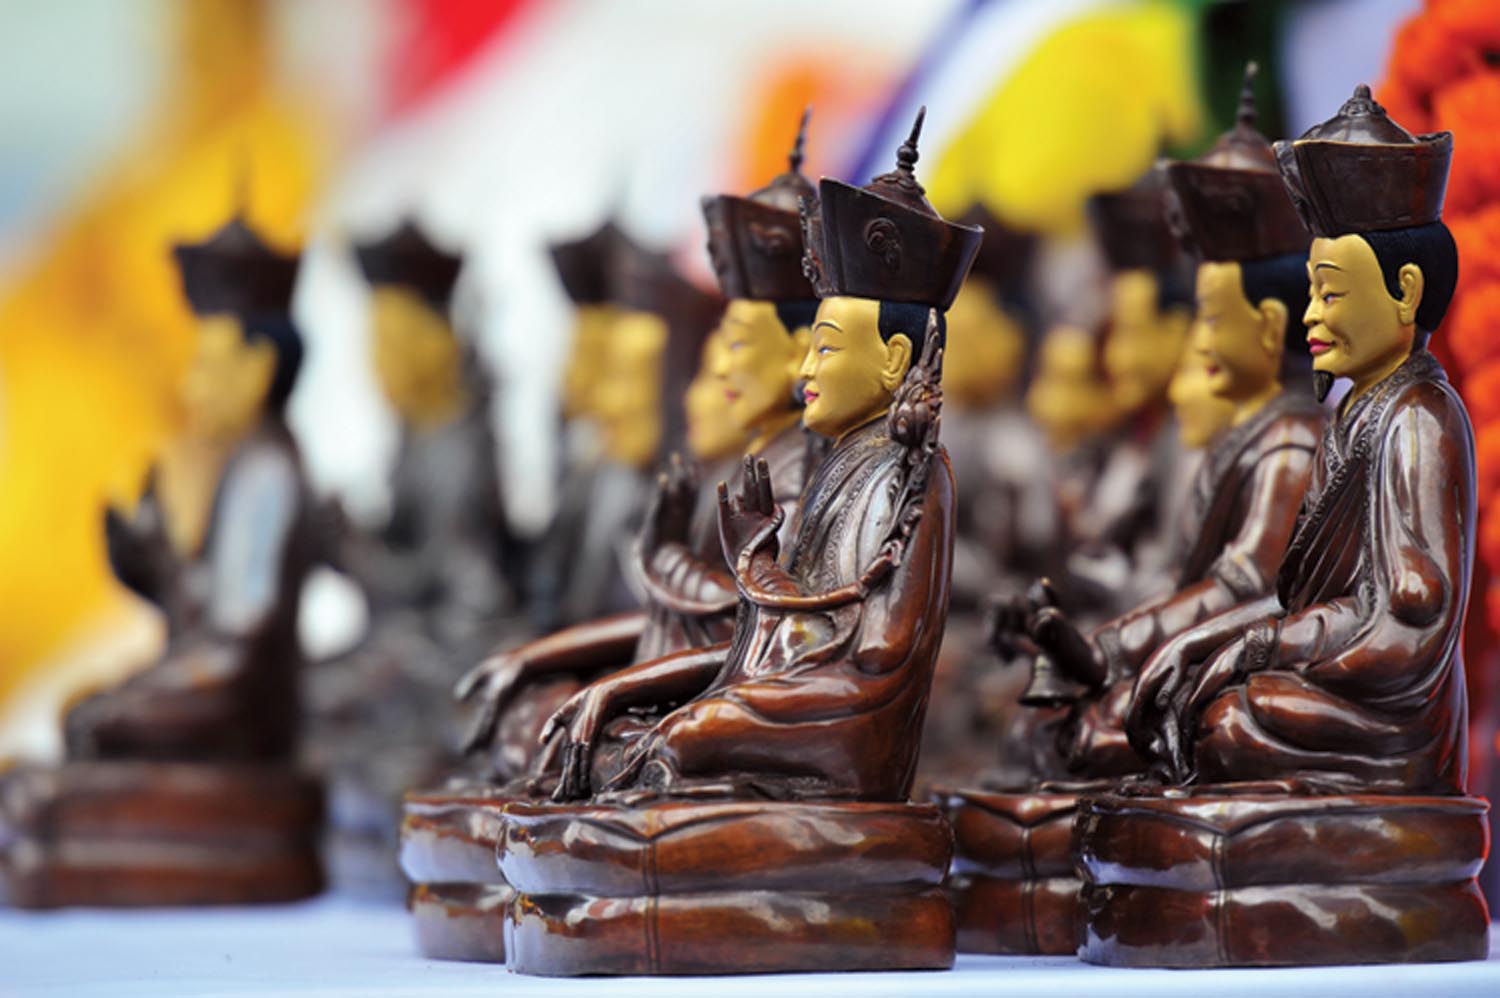 Les enseignements du Seigneur Gampopa sont perpétués par le « rosaire d’or » des maîtres de la lignée, qui font que les enseignements Dagpo Kagyu sont aujourd’hui accessibles au monde entier. Stephan Storm et le shédra de Karma Lèkshey Ling ont offert cette série de statues de l’ensemble du rosaire d’or au XVIIe Karmapa, lors de la cérémonie d’ouverture de ‘Karmapa 900’ à Bodhgaya, en décembre 2010. Photo de Liao Kuo Ming.